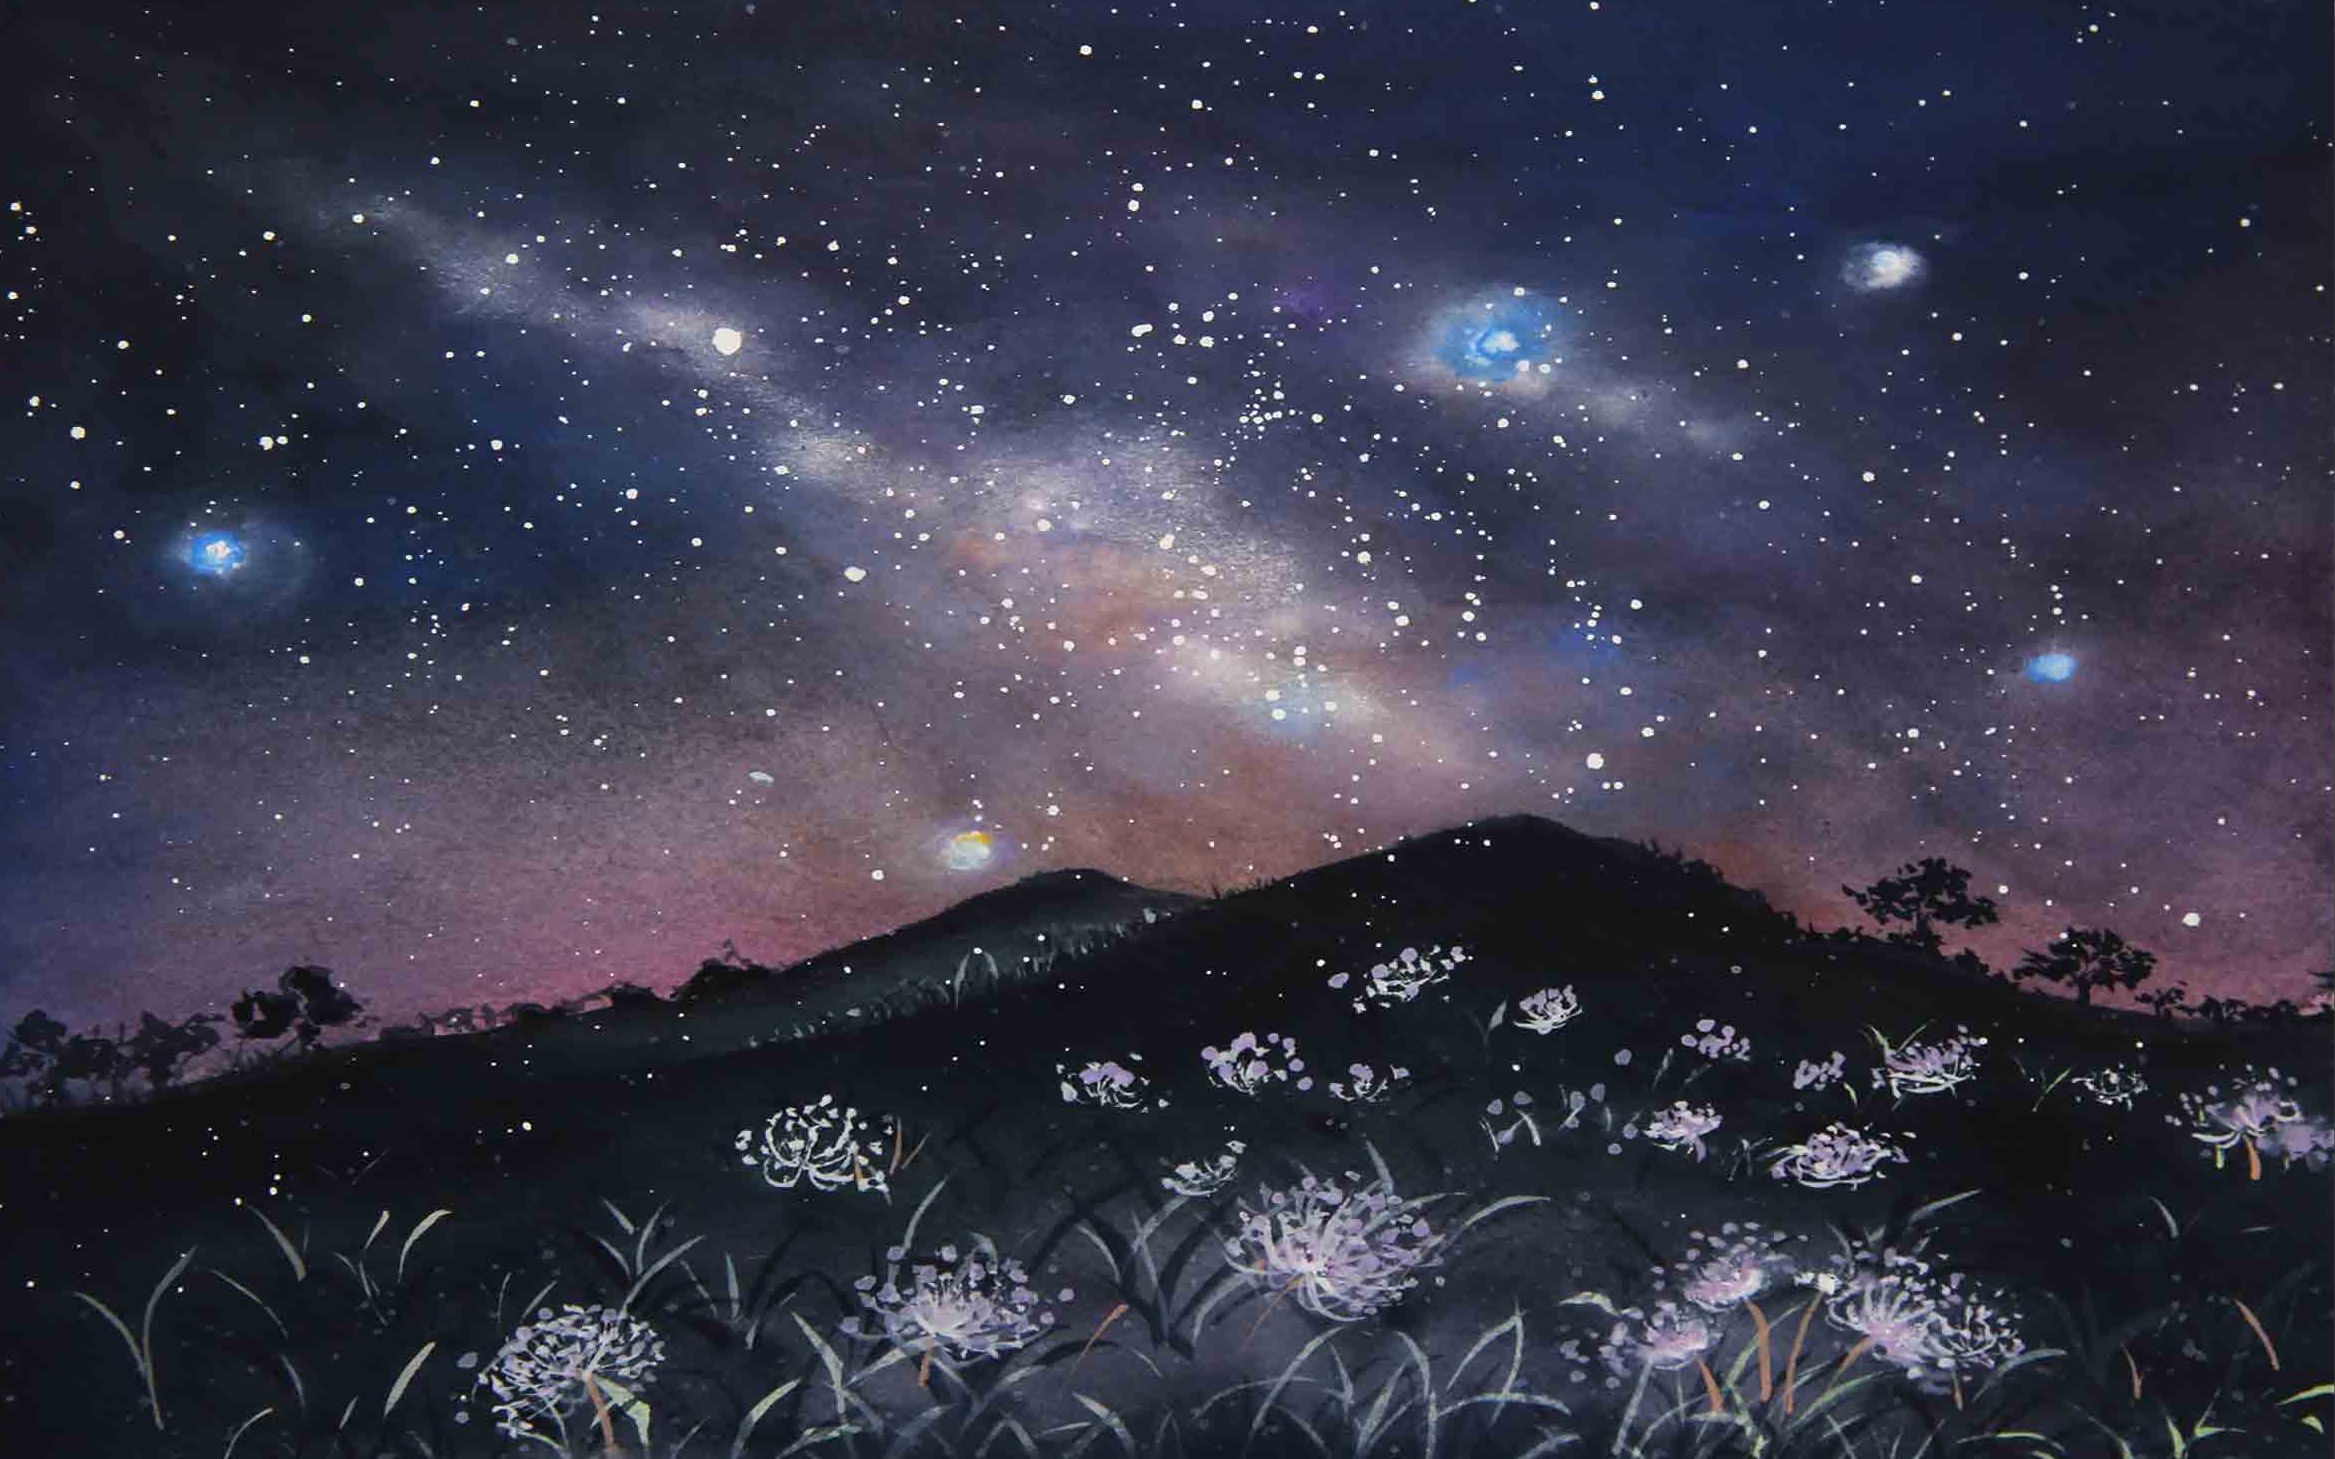 【绘画教程】用水彩画出绚烂的星空!简单易学!